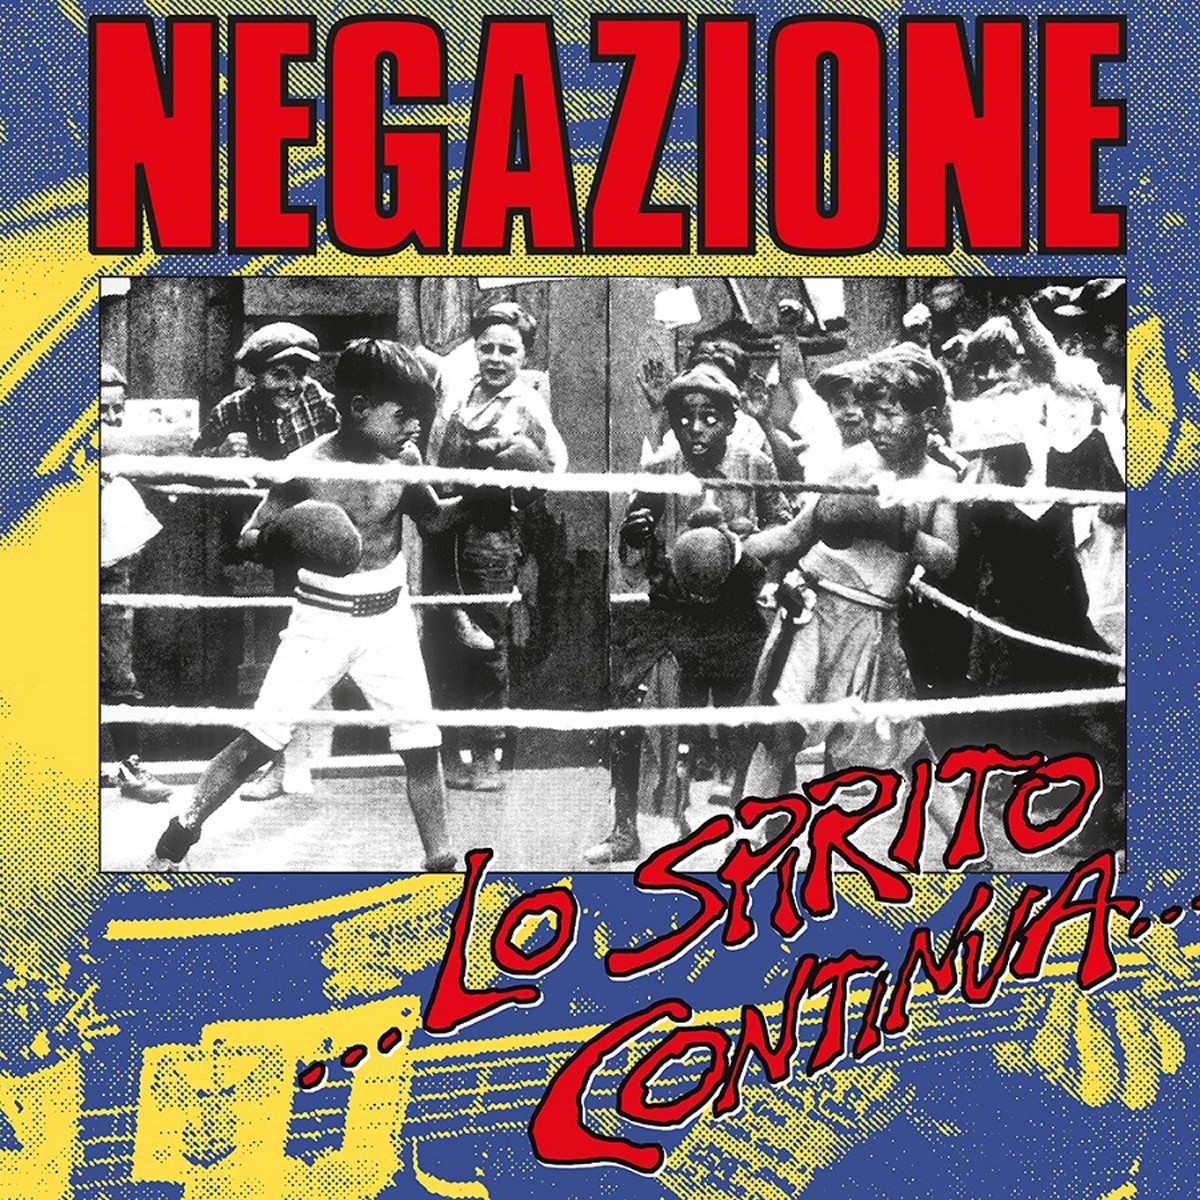 Negazione - Lo Spirito Continua (Tvor Edition)